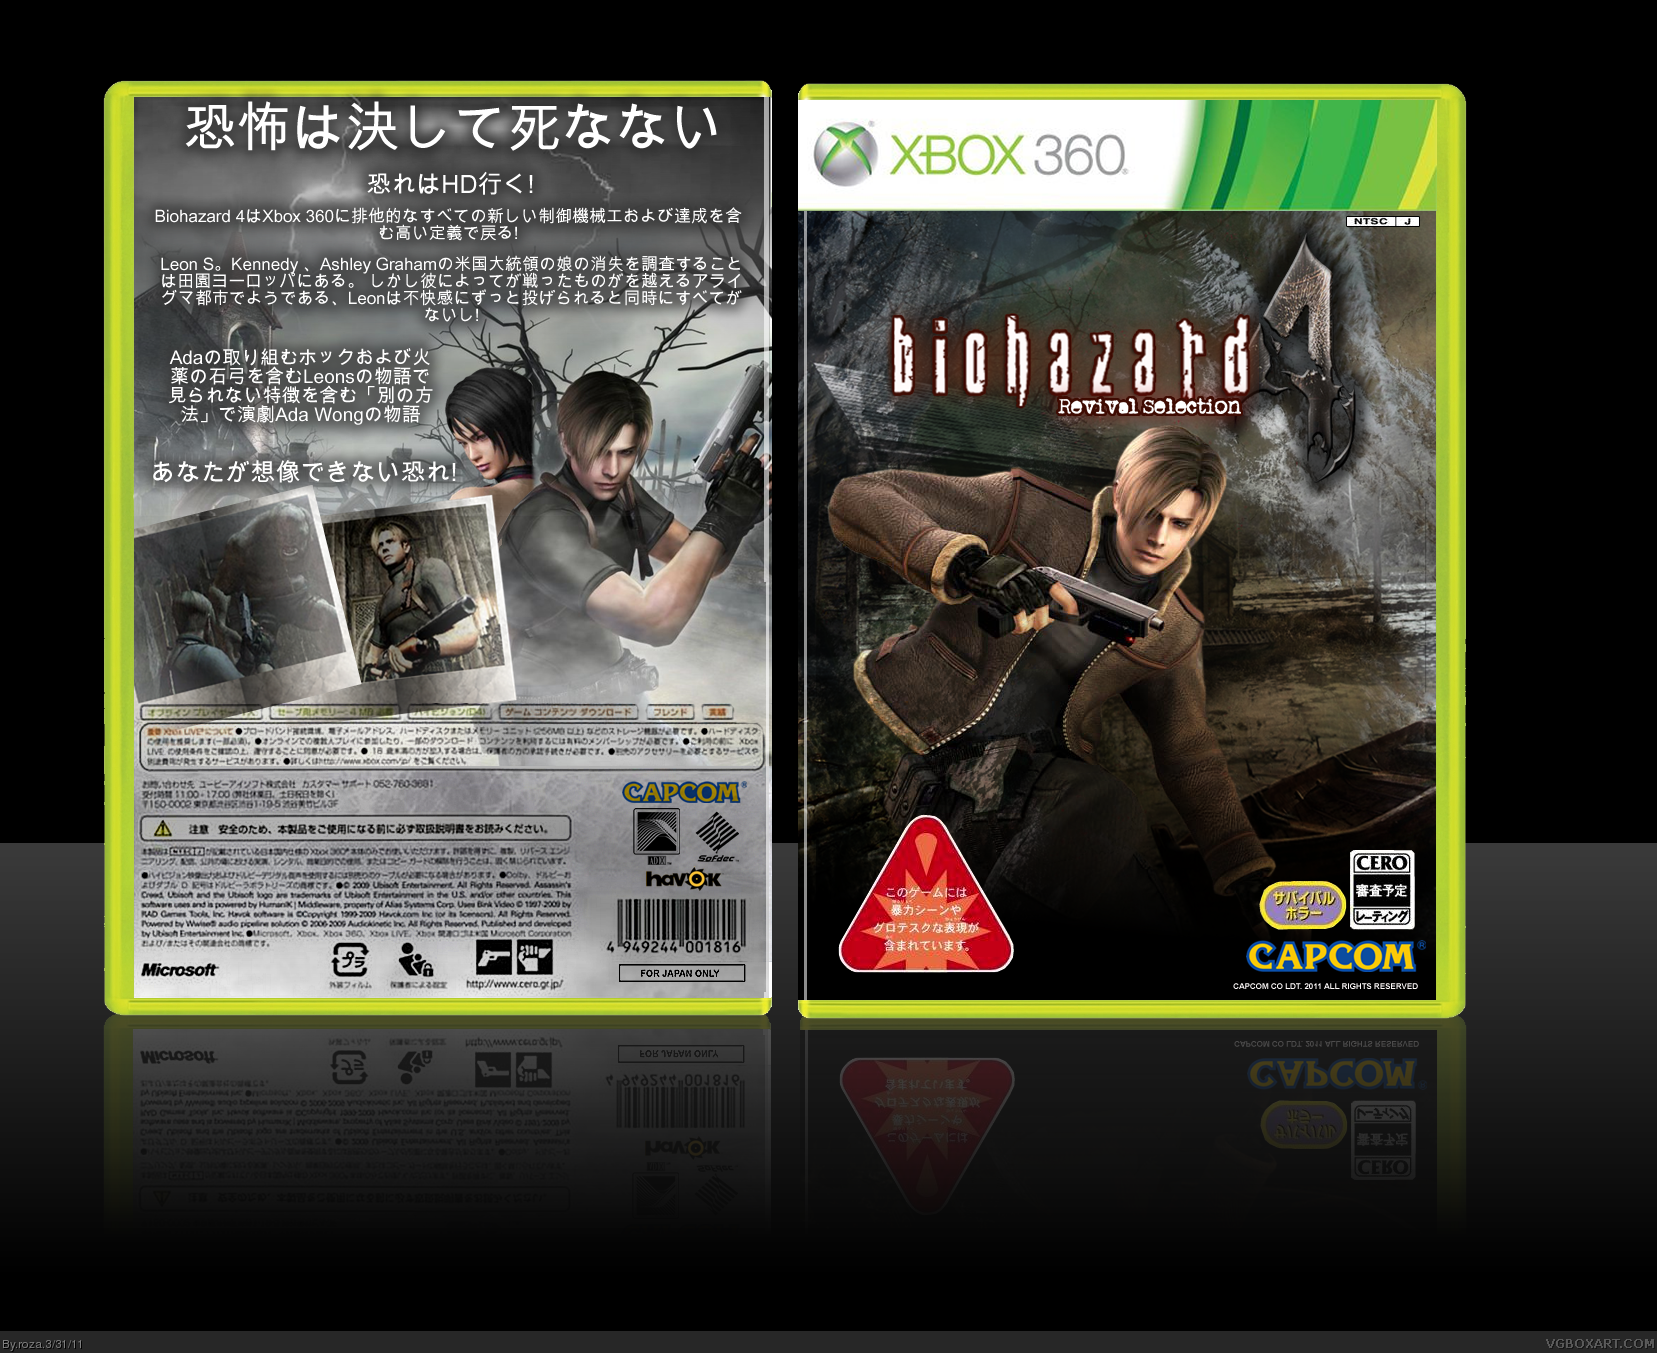 Biohazard 4: Revival Selection box cover